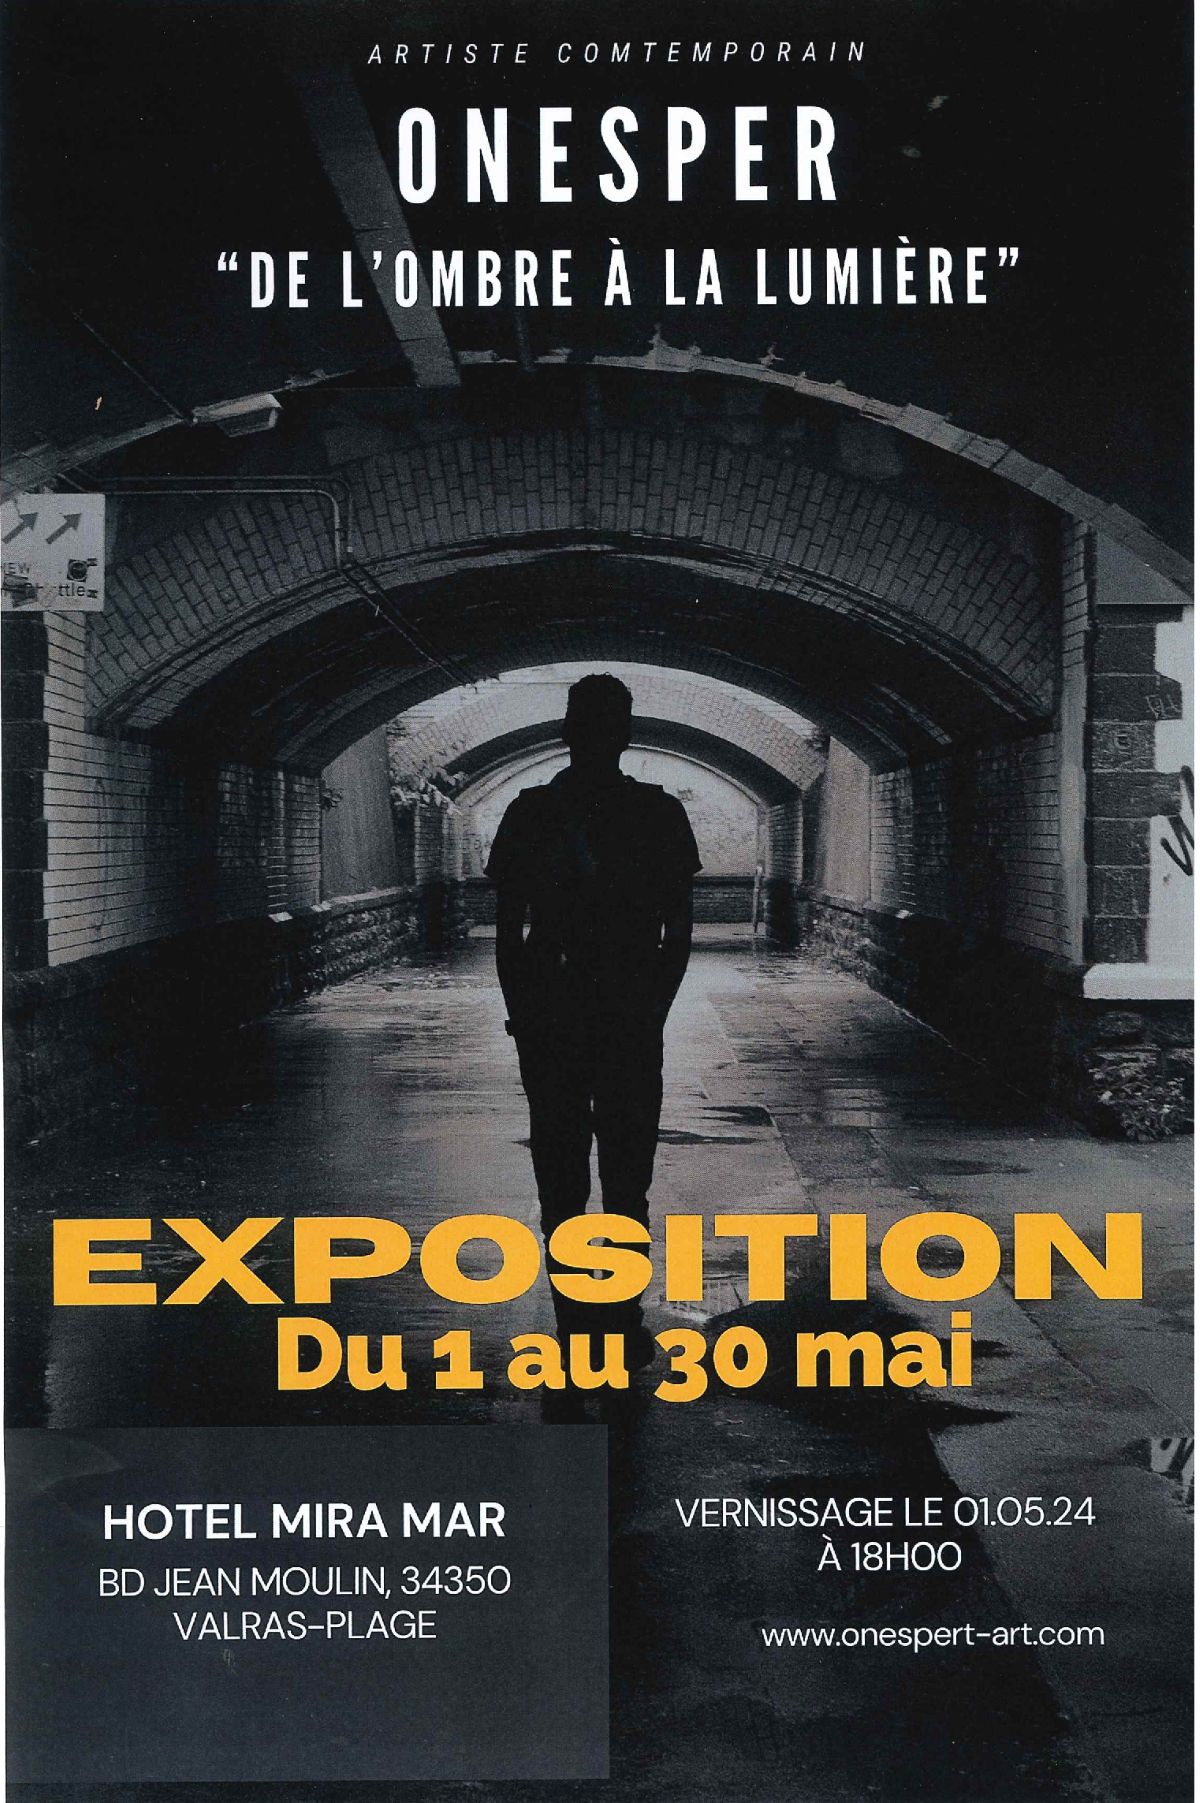 EXPOSITION HÔTEL MIRA-MAR- ONESPER " DE L'OMBRE À LA LUMIÈRE"